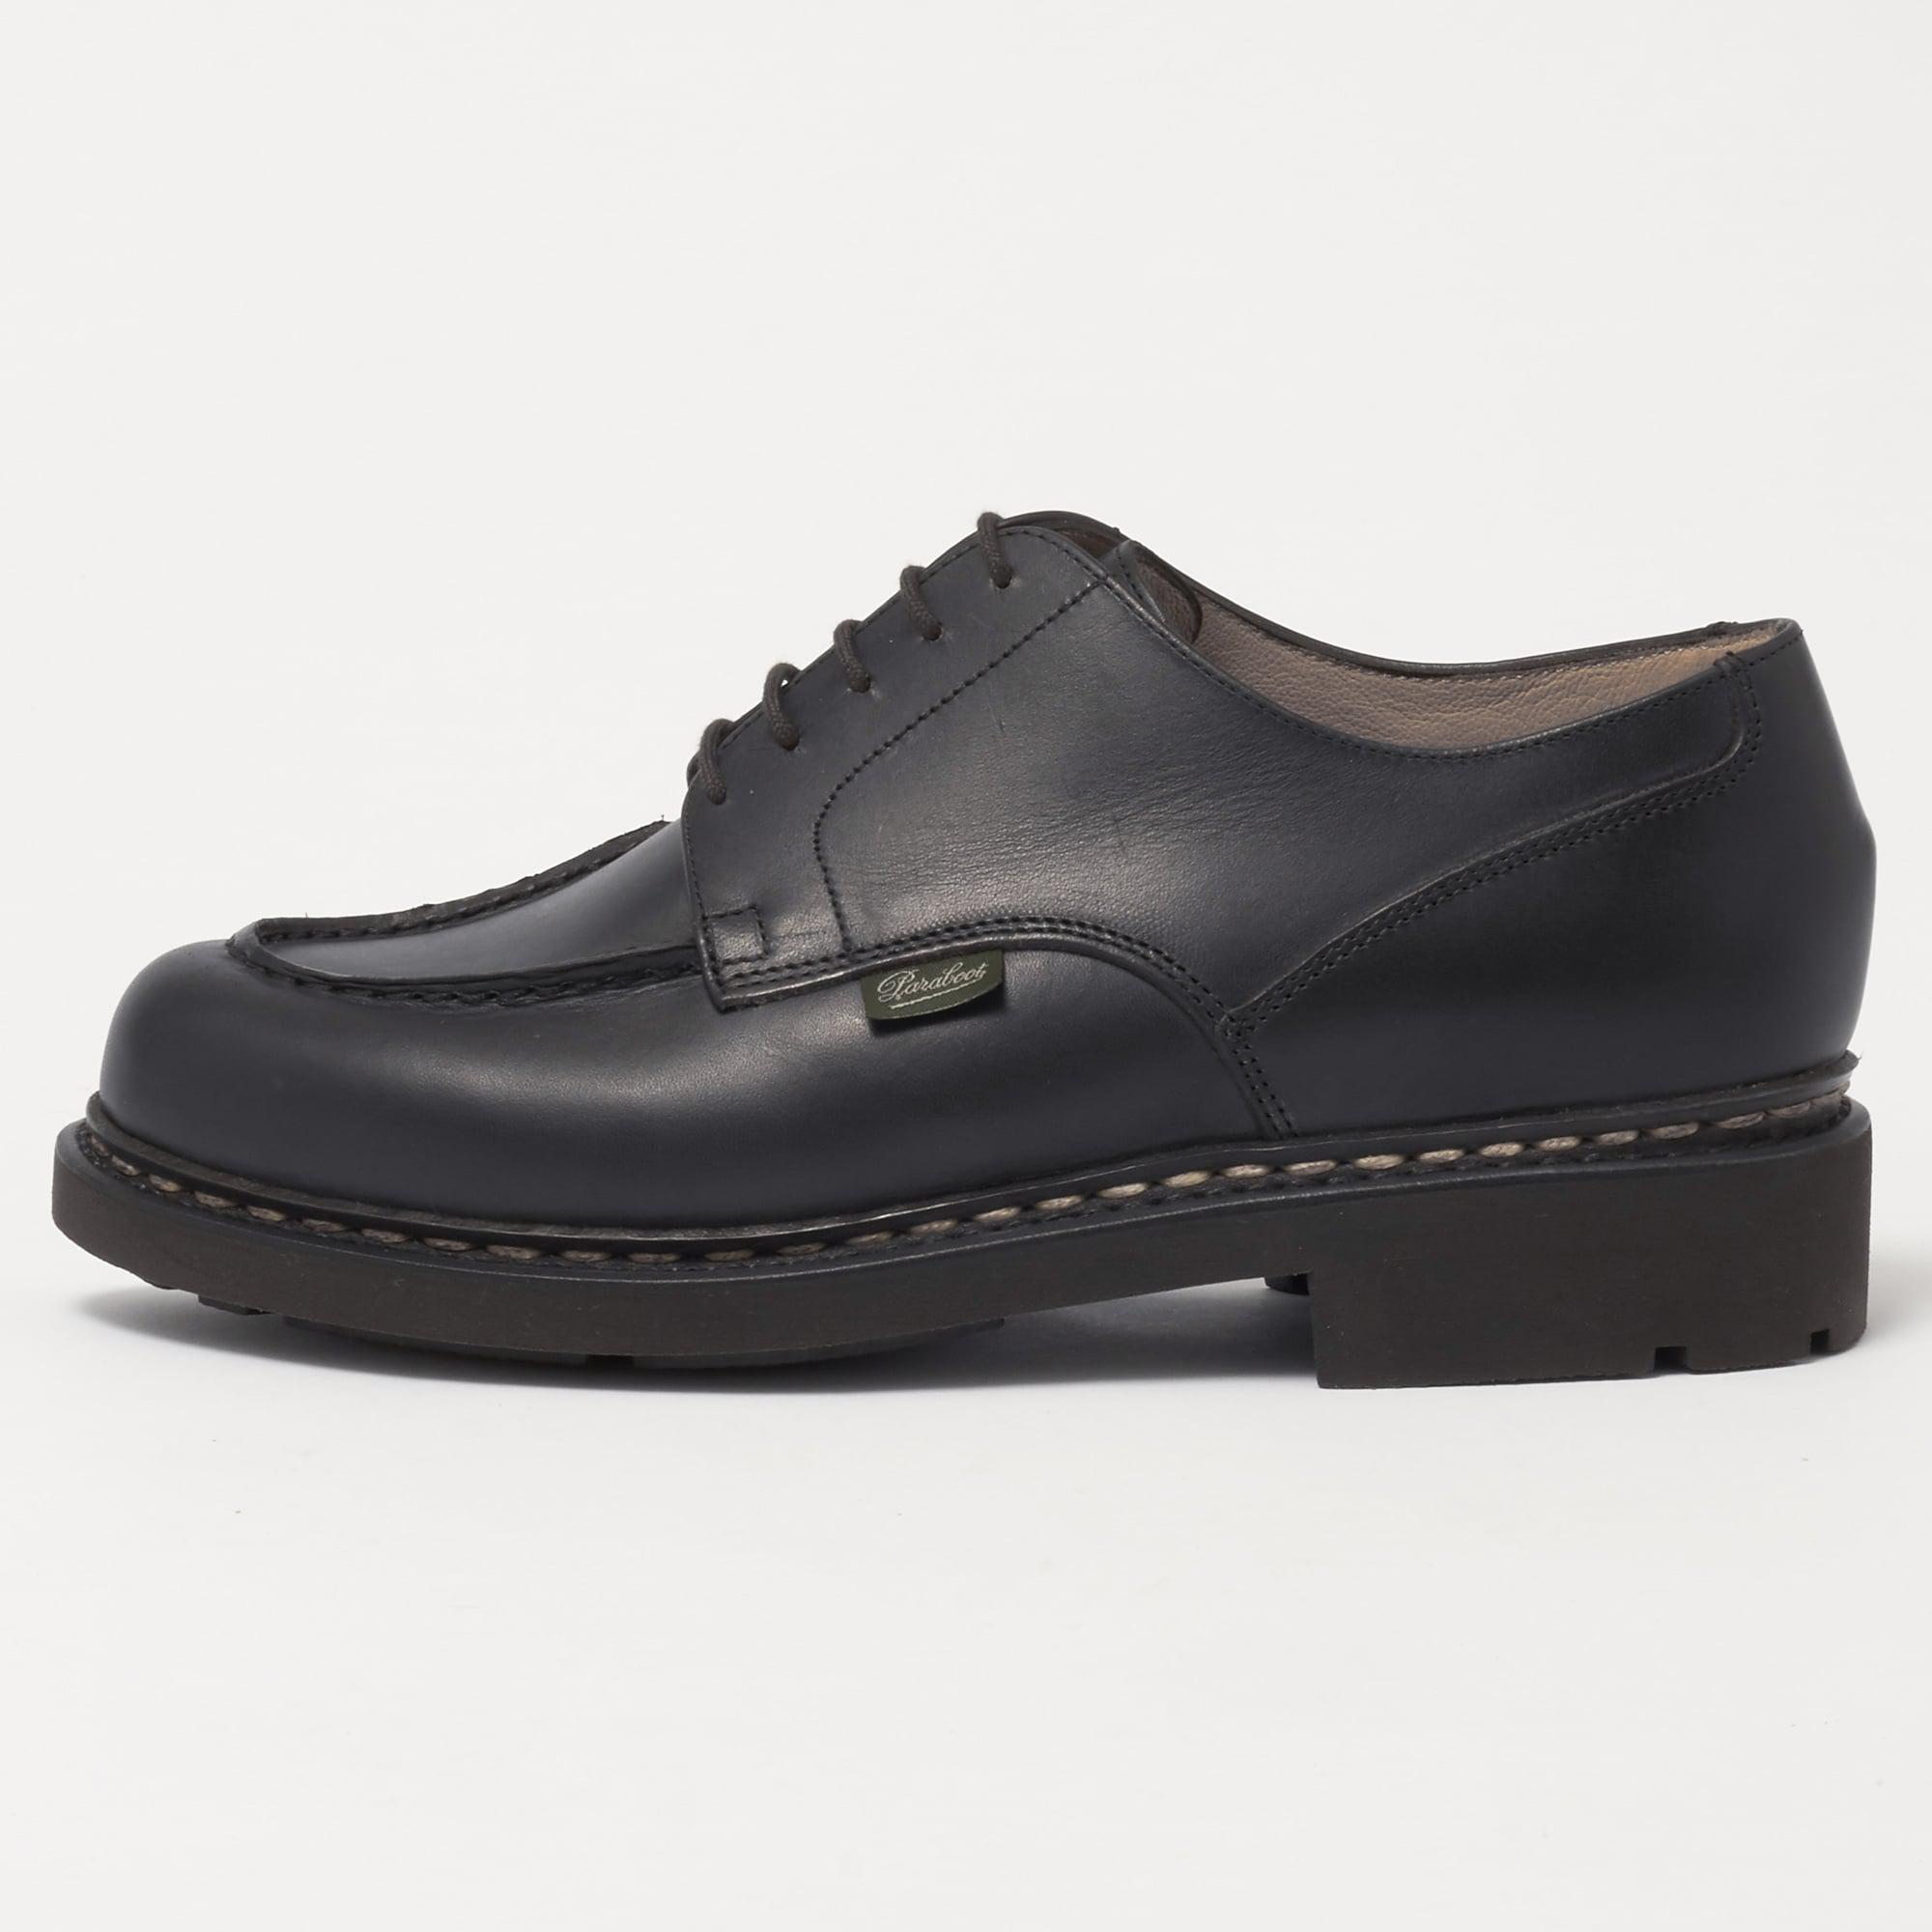 Paraboot Chambord Shoe - Noir in Black for Men - Lyst